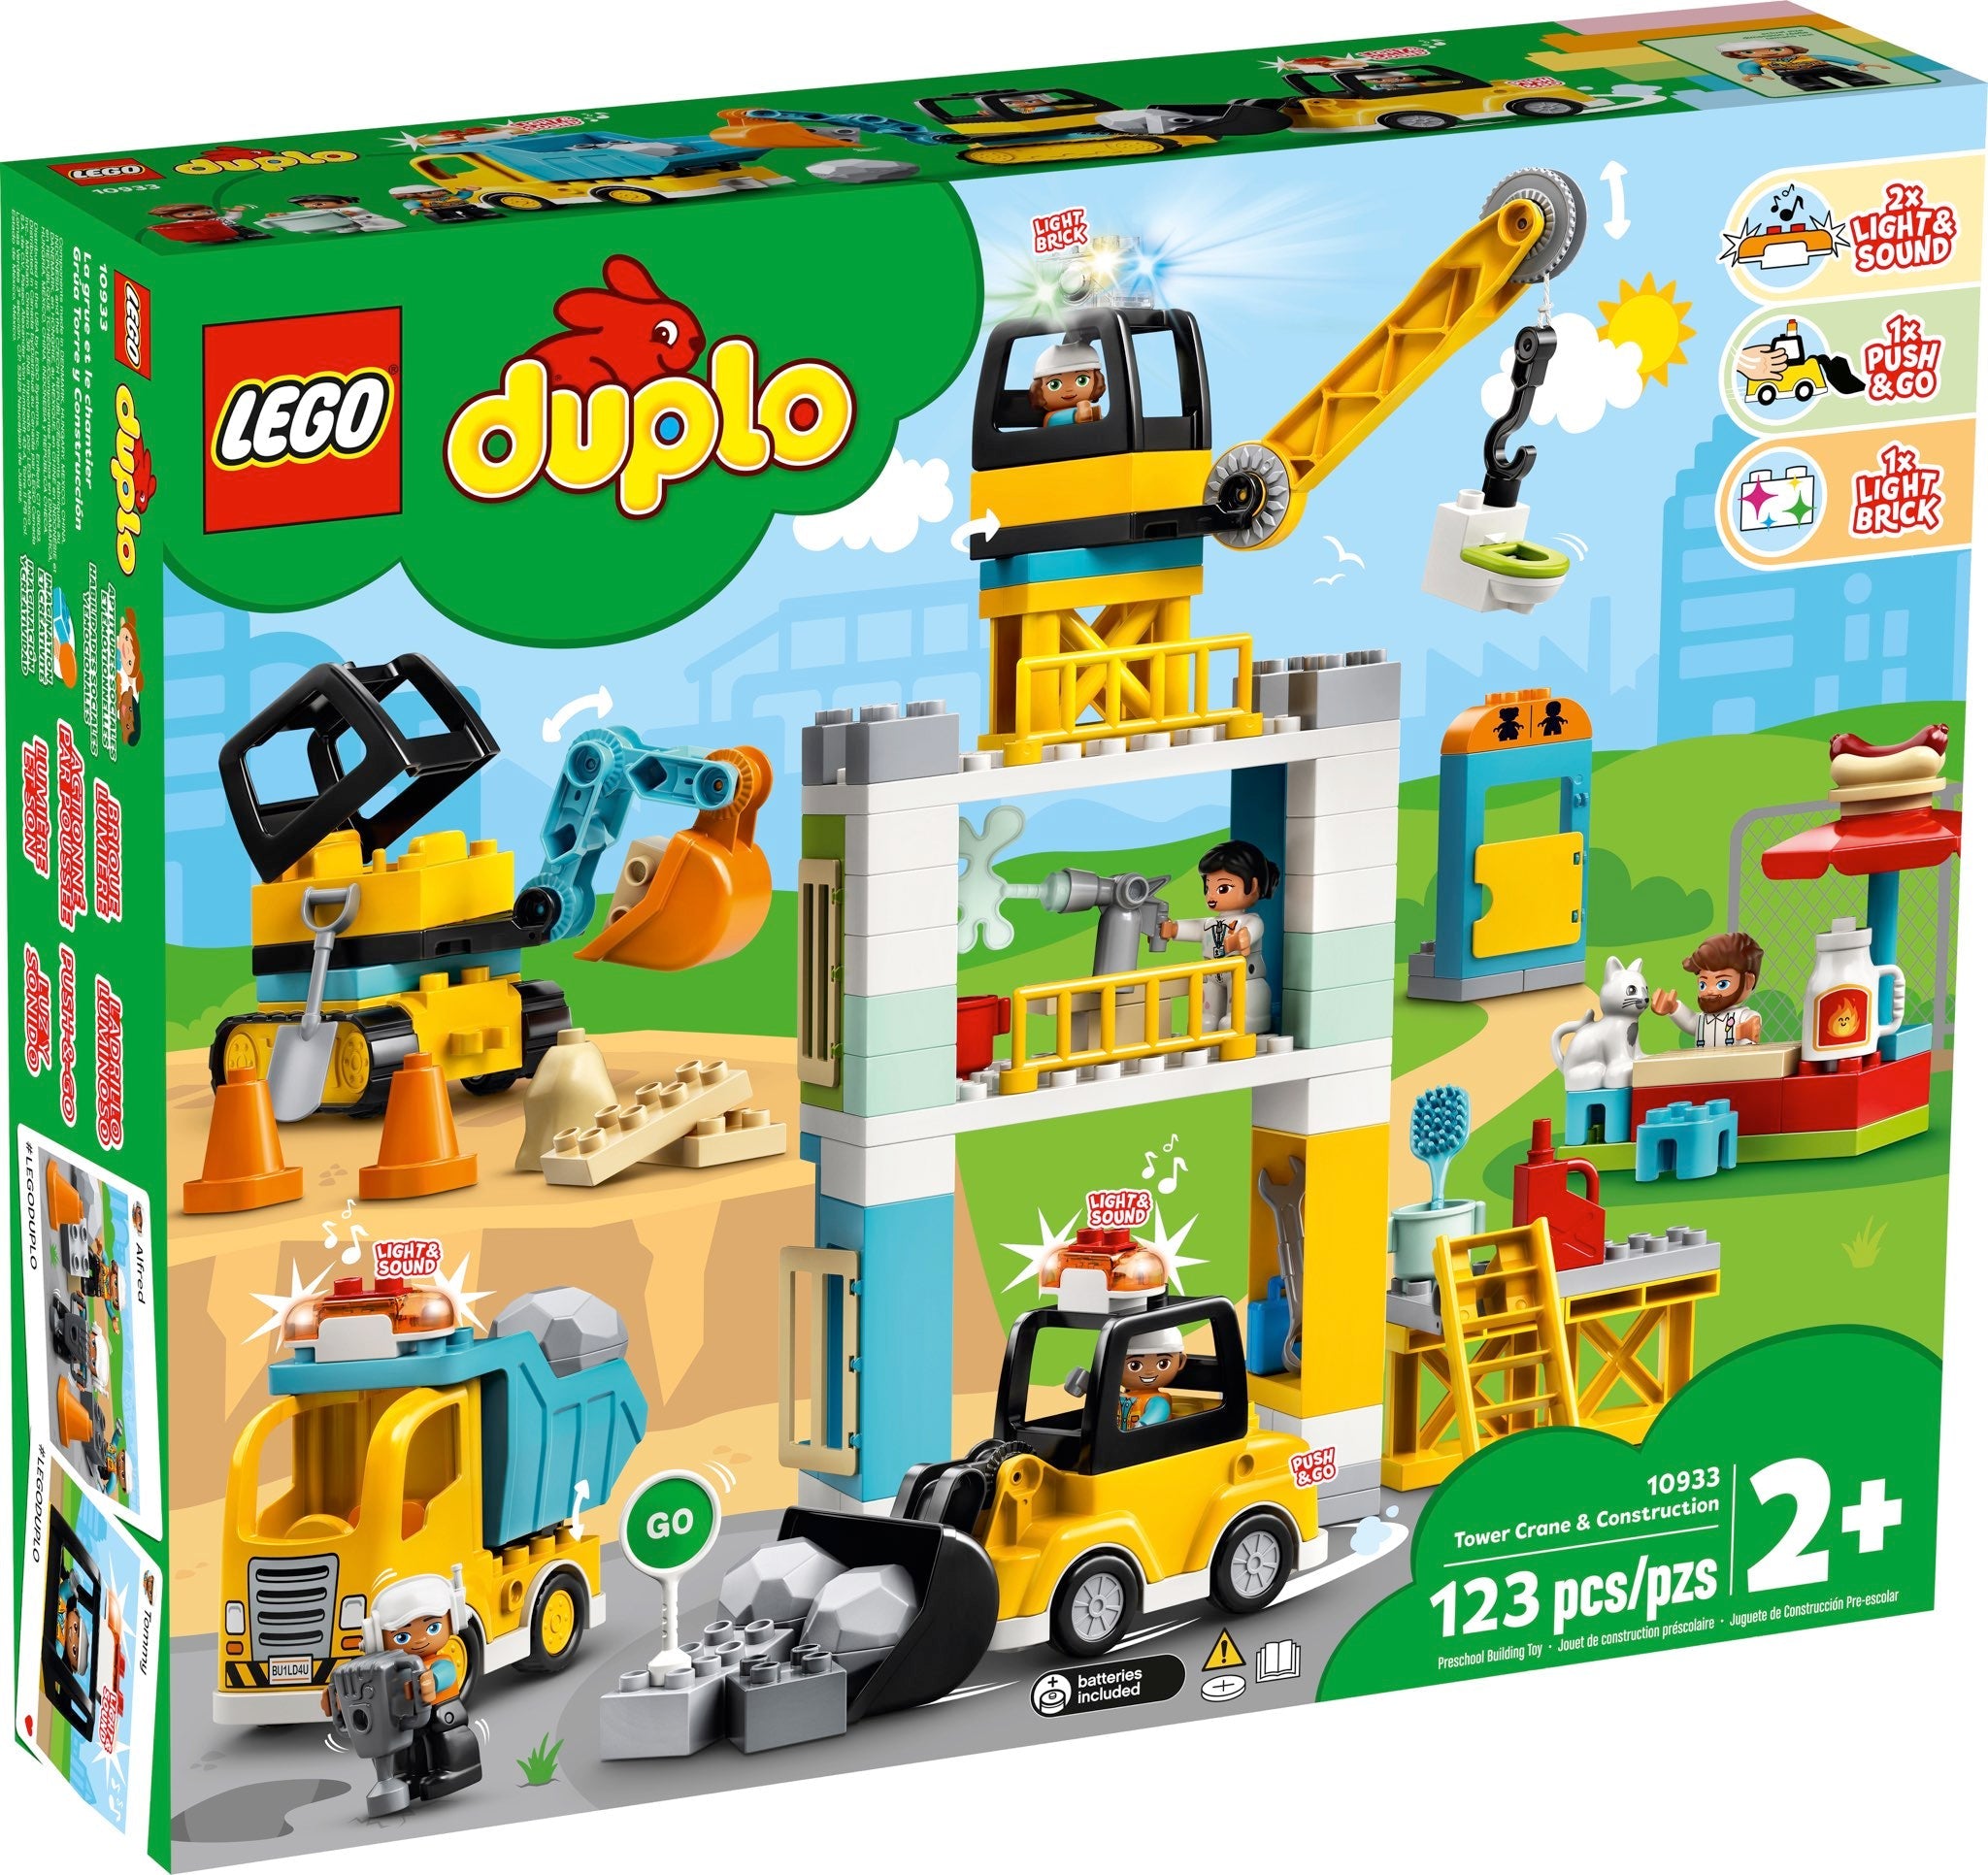 LEGO Duplo Grosse Baustelle mit Licht und Ton (10933) - im GOLDSTIEN.SHOP verfügbar mit Gratisversand ab Schweizer Lager! (5702016618228)